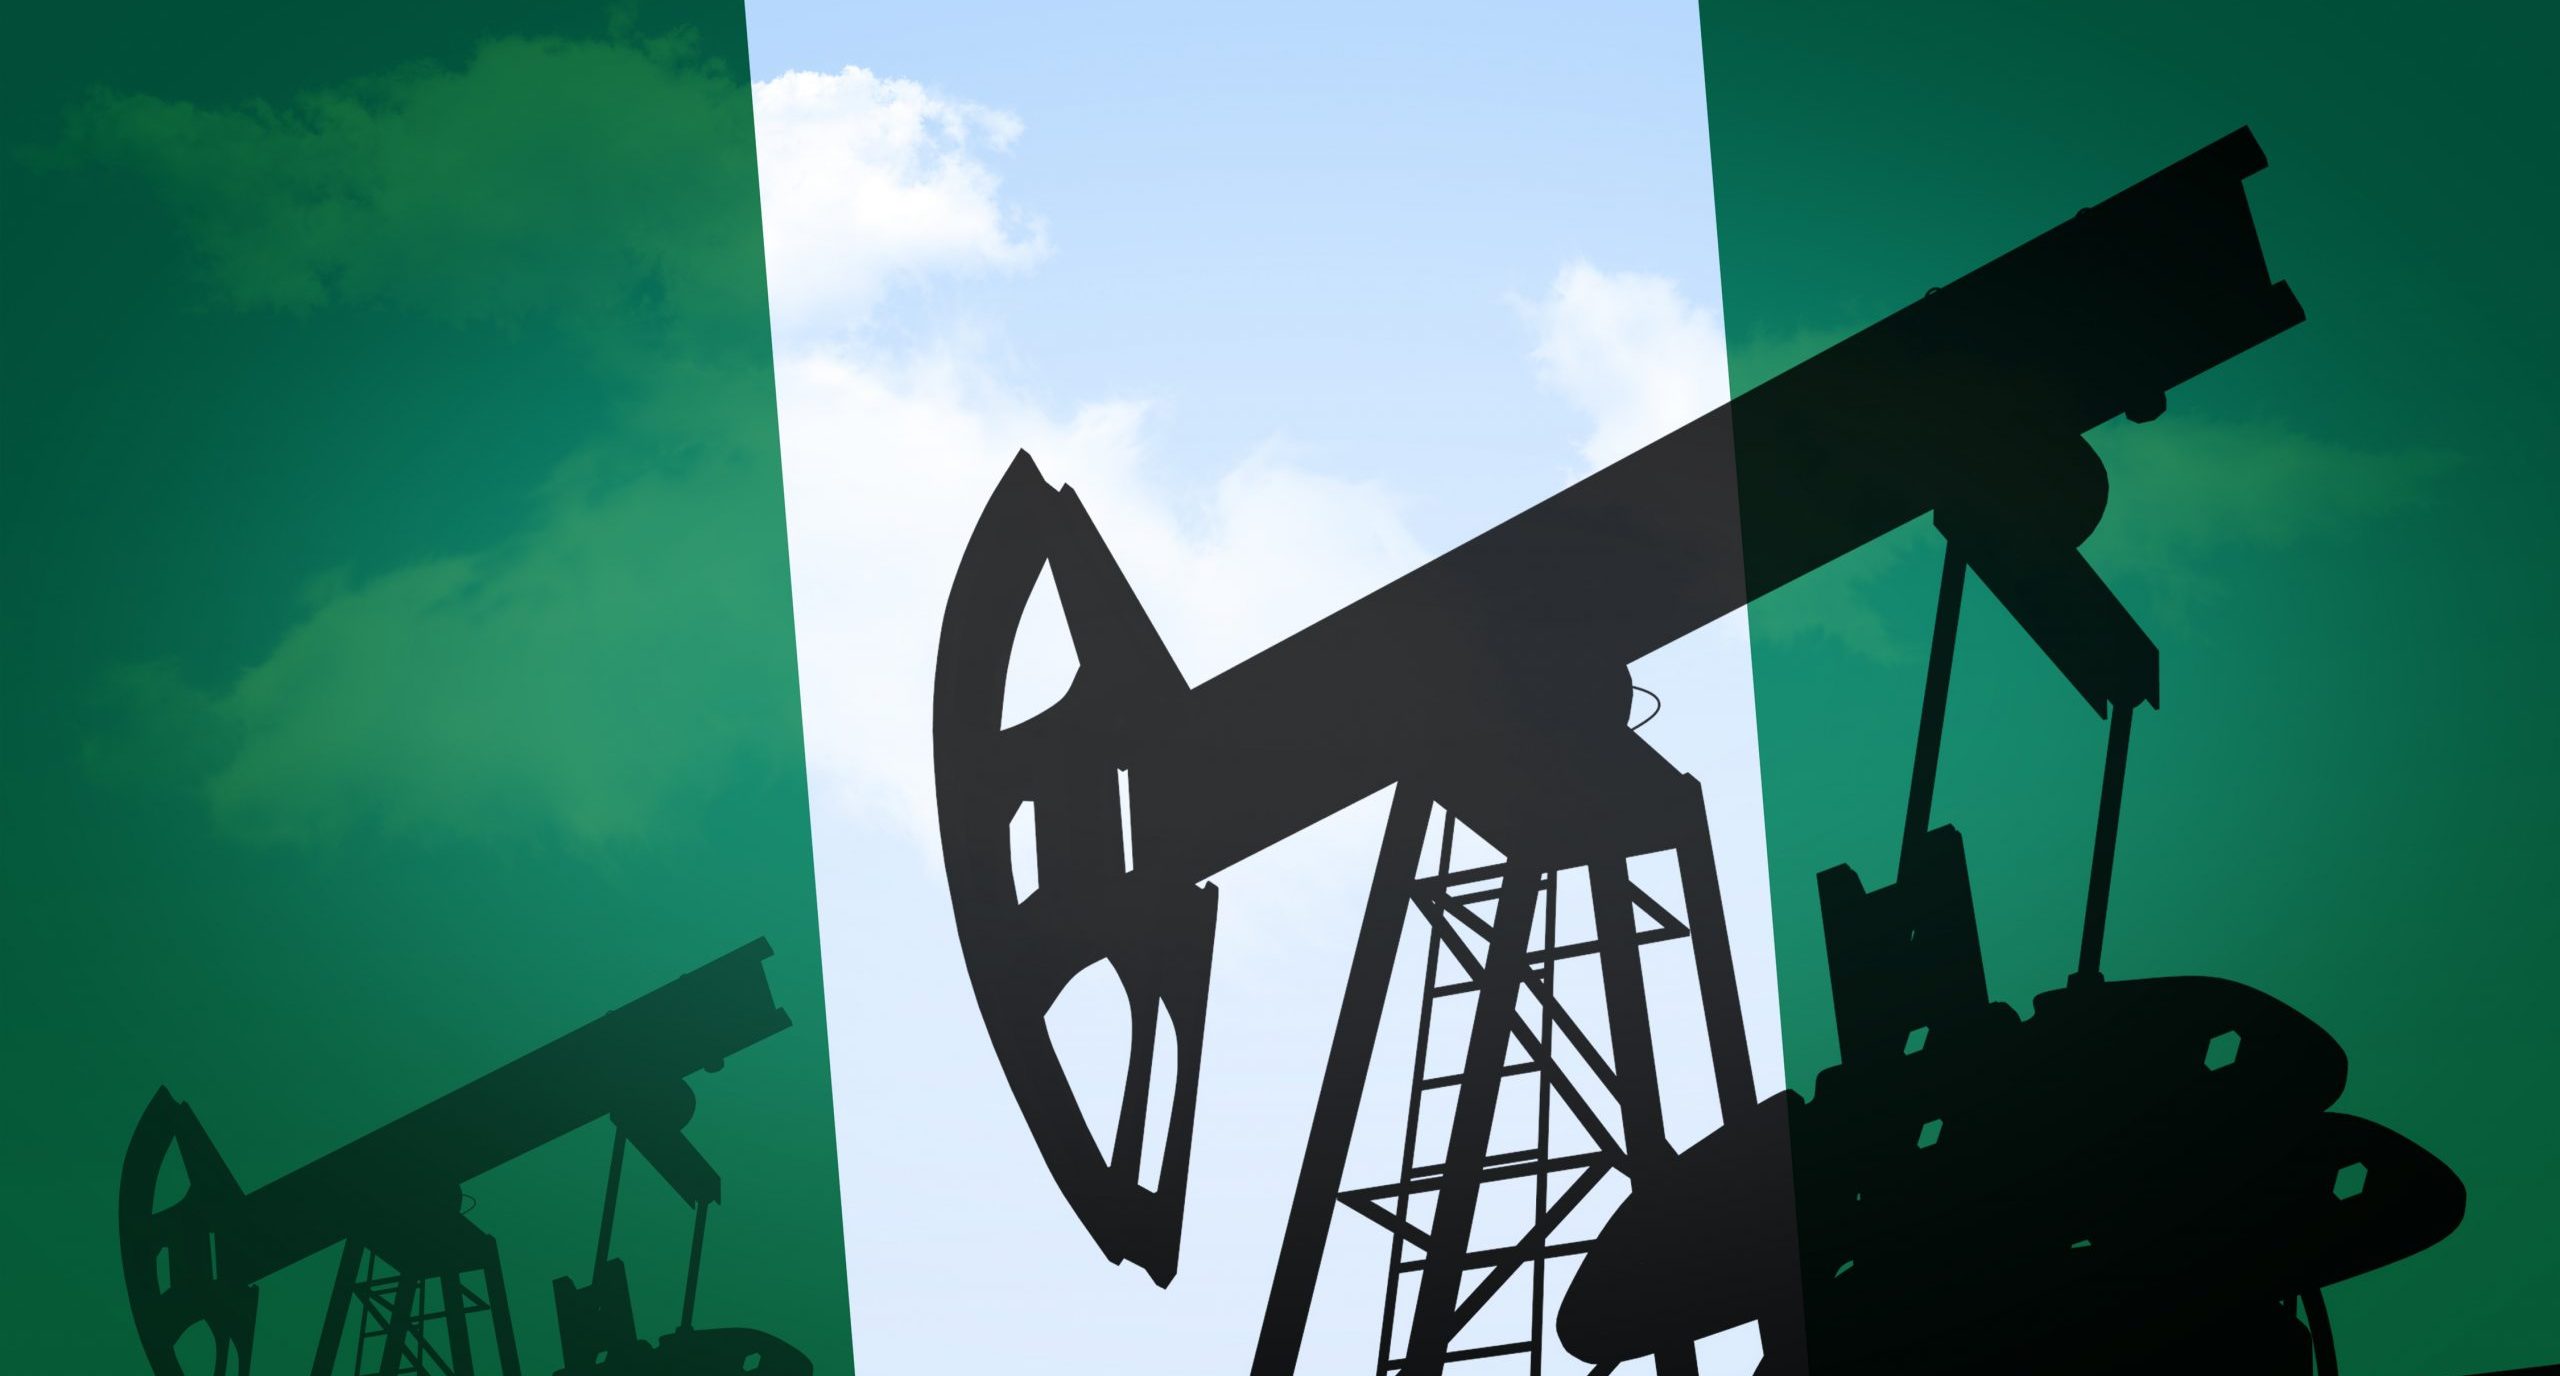 Nijerya, iki petrol rafinerisini daha yenilemek için yaklaşık 1,5 milyar dolar harcayacak